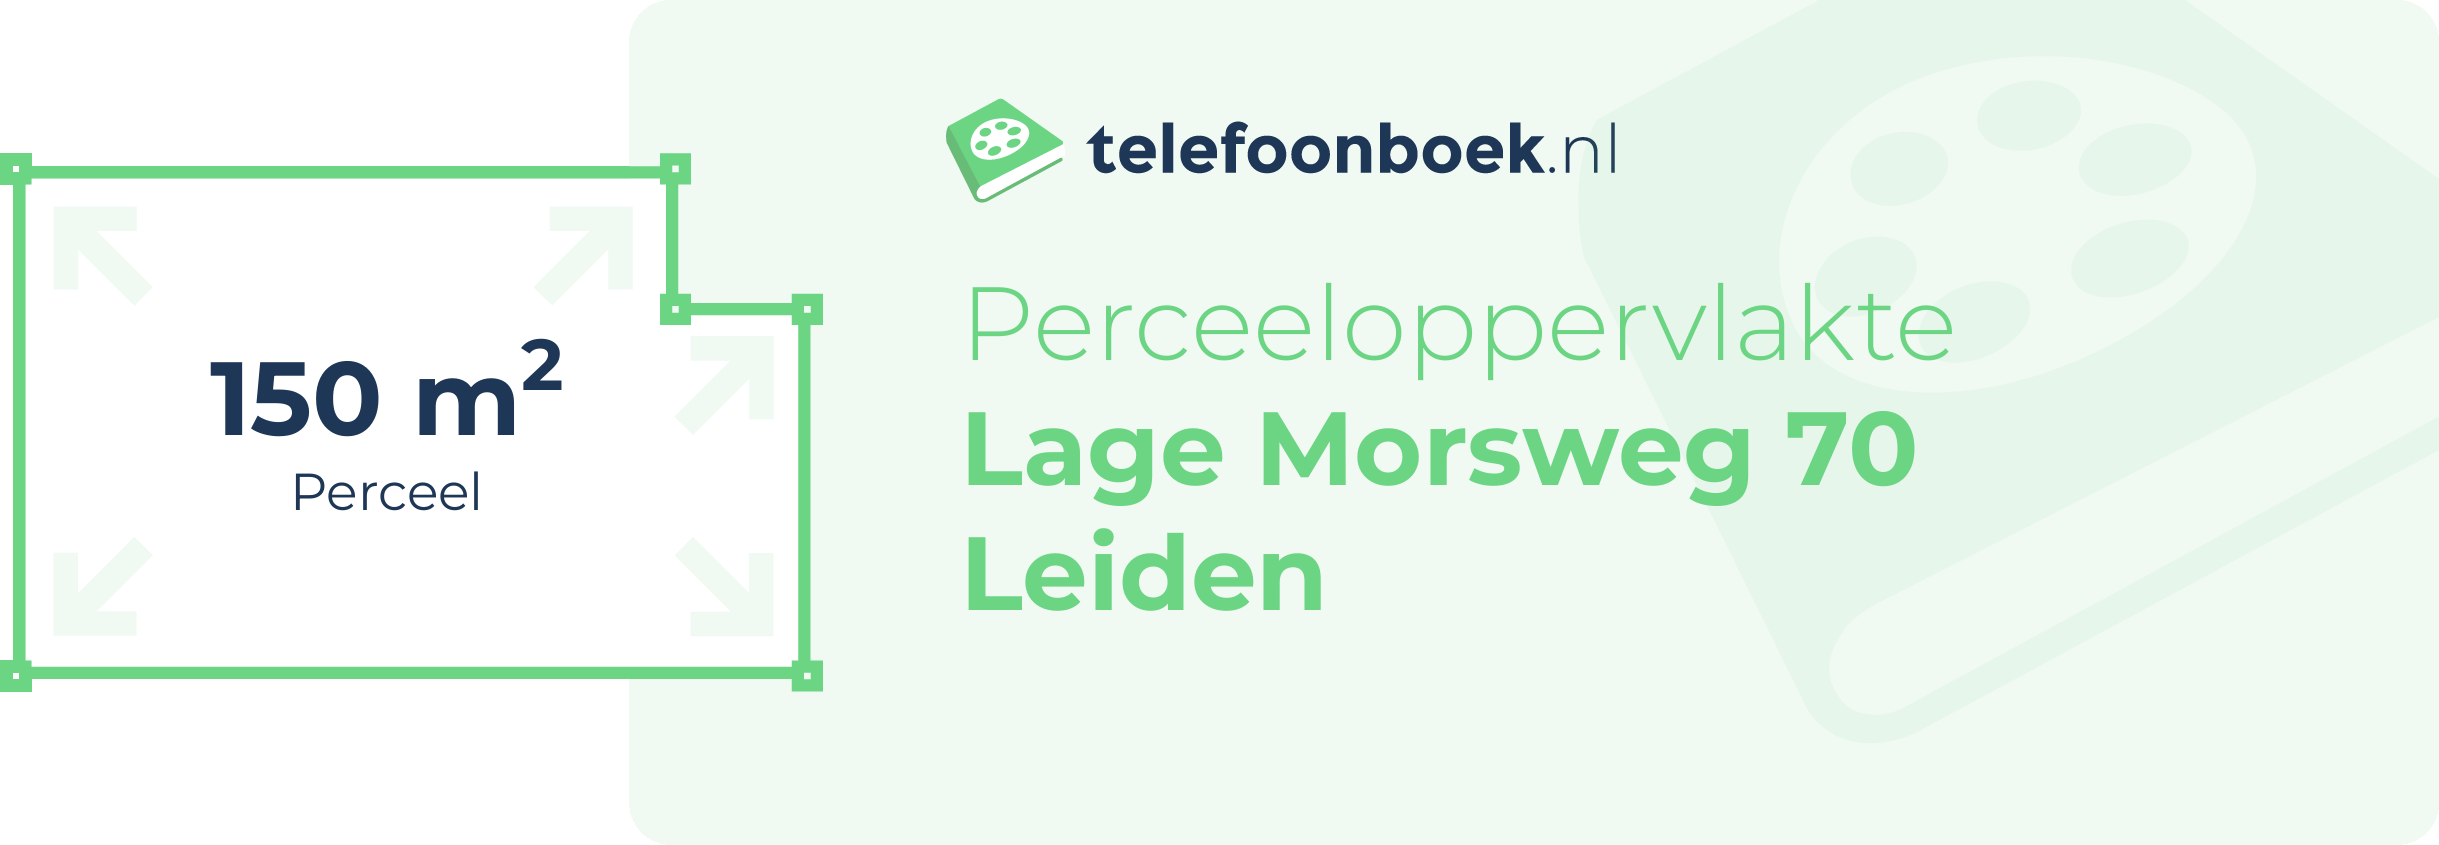 Perceeloppervlakte Lage Morsweg 70 Leiden